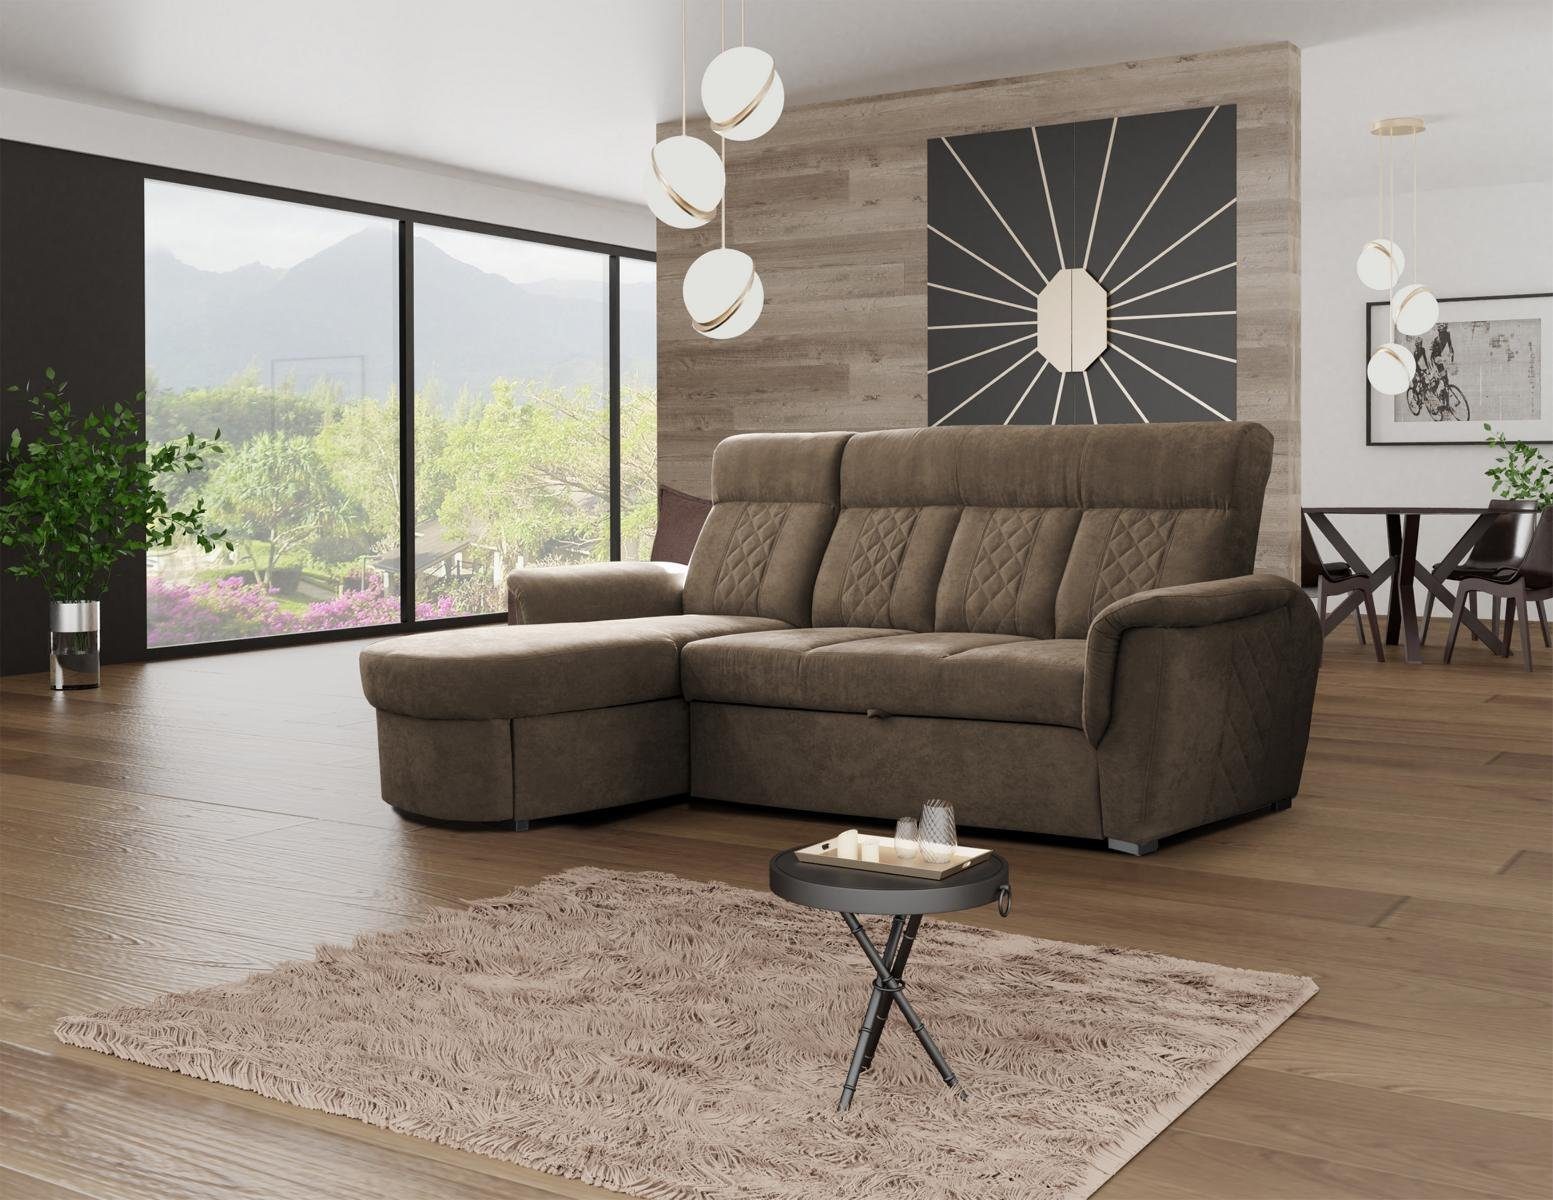 JVmoebel Ecksofa Ecksofa Sofas Bettfunktion L-Form, Braun hochwertige Mit moderne Design Sofas exklusive